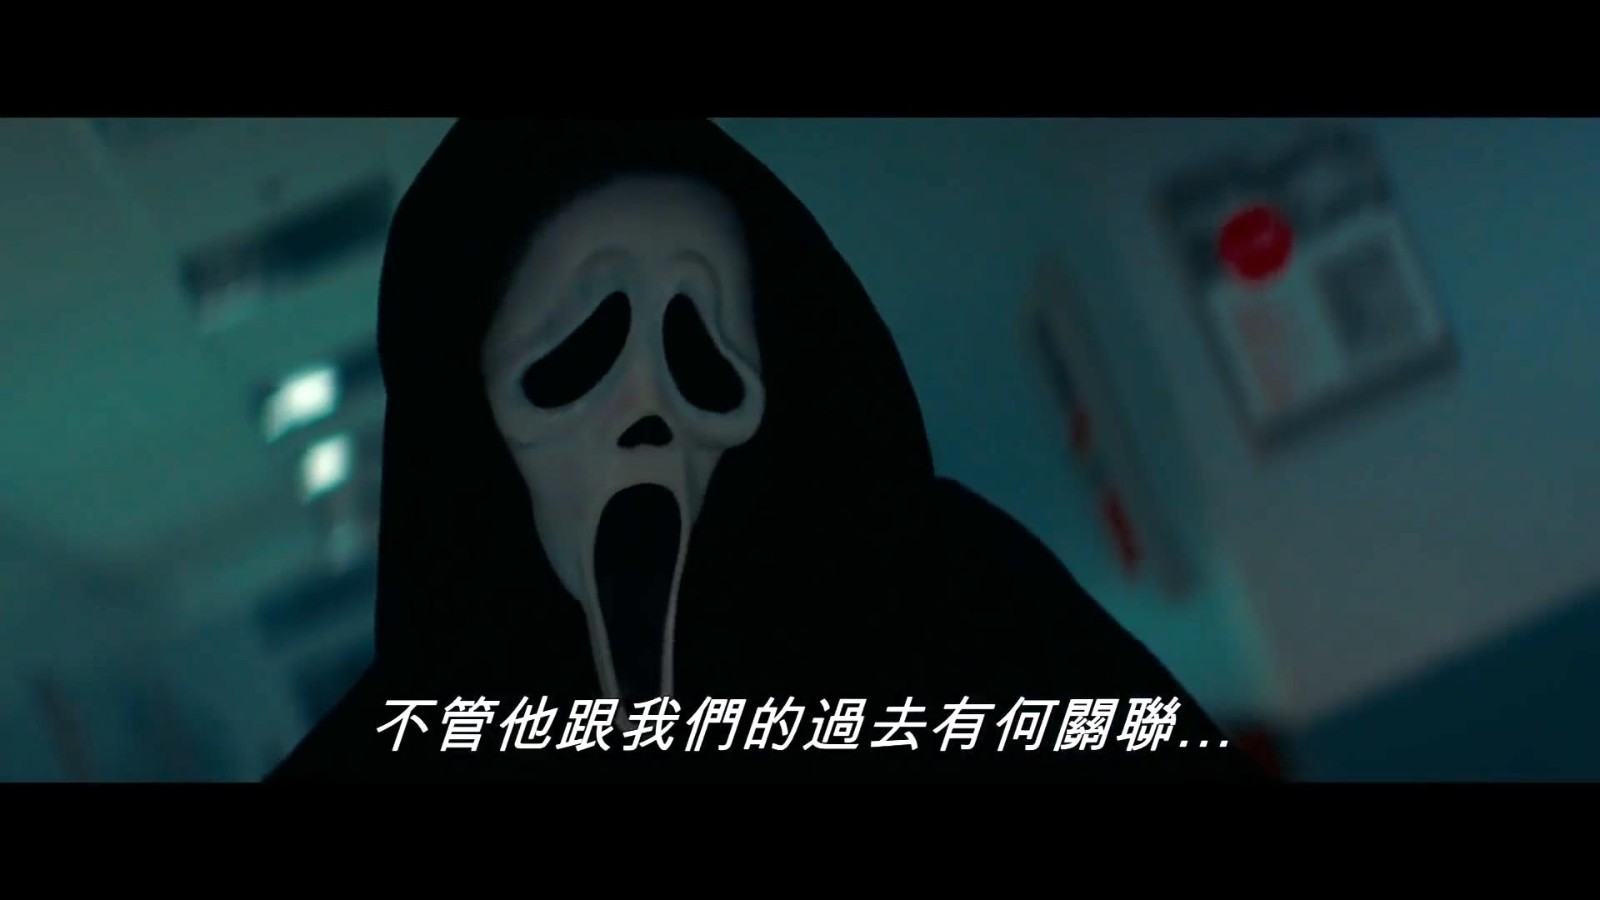 《惊声尖叫5》电影中文预告 鬼脸杀手让人尖叫